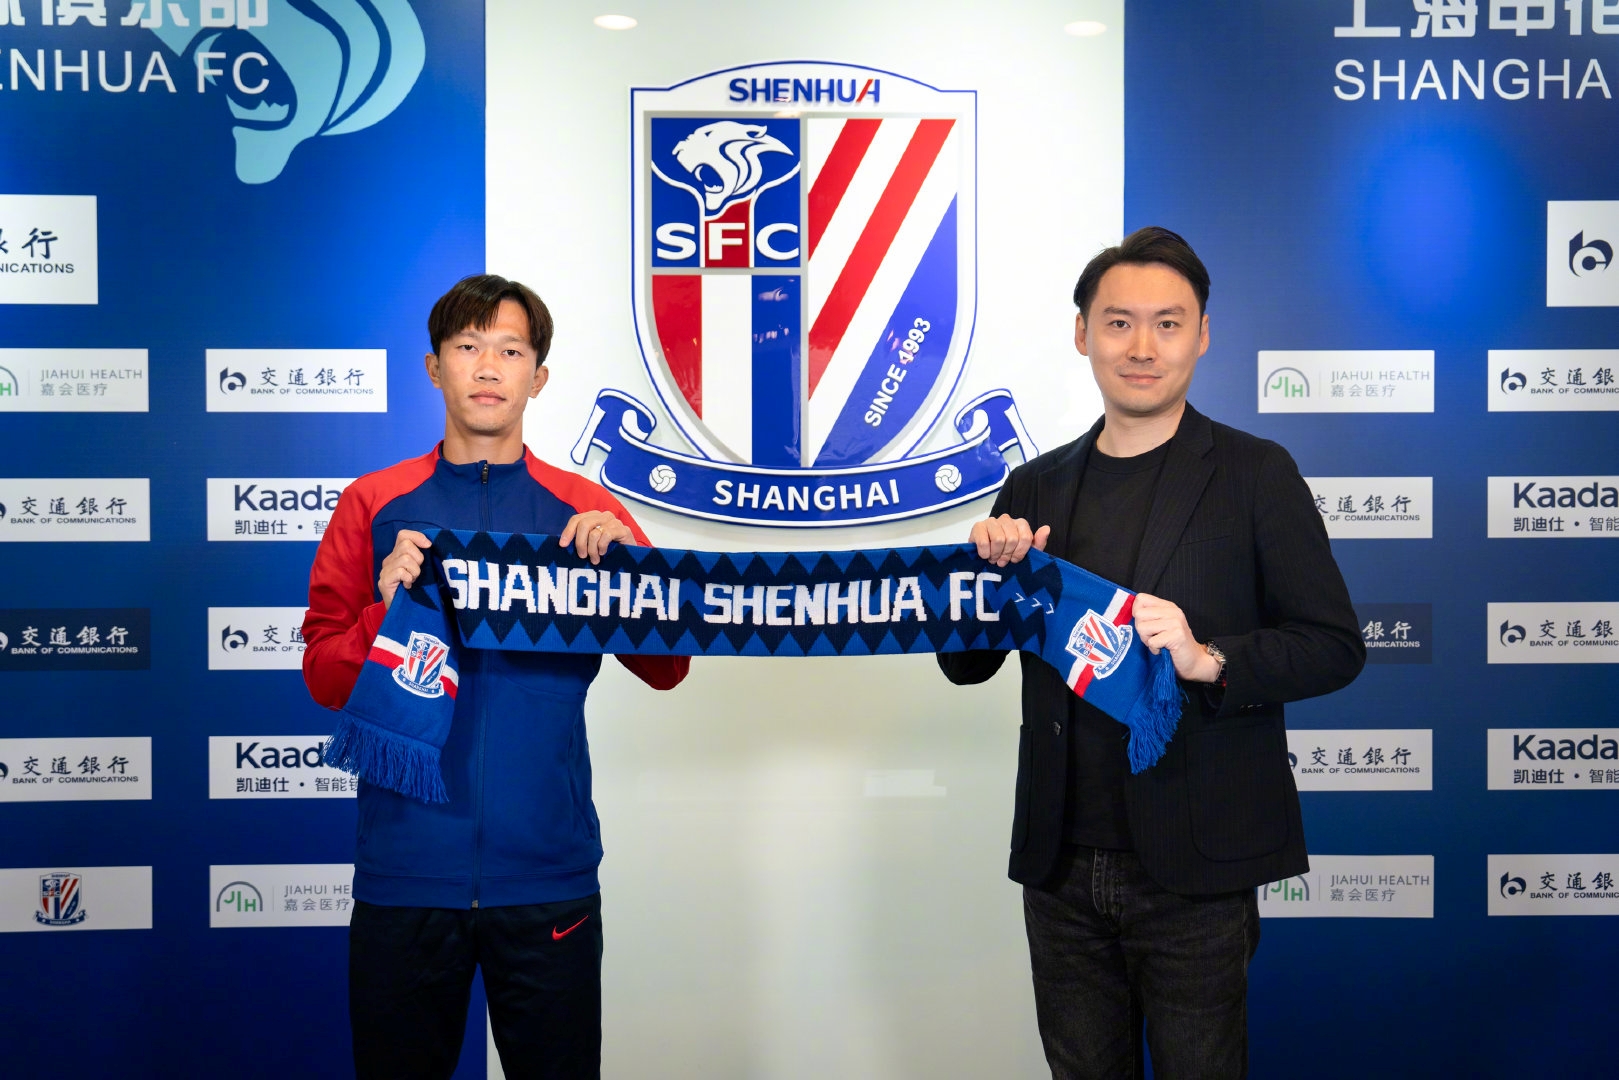 谢鹏飞正式加盟上海申花足球俱乐部